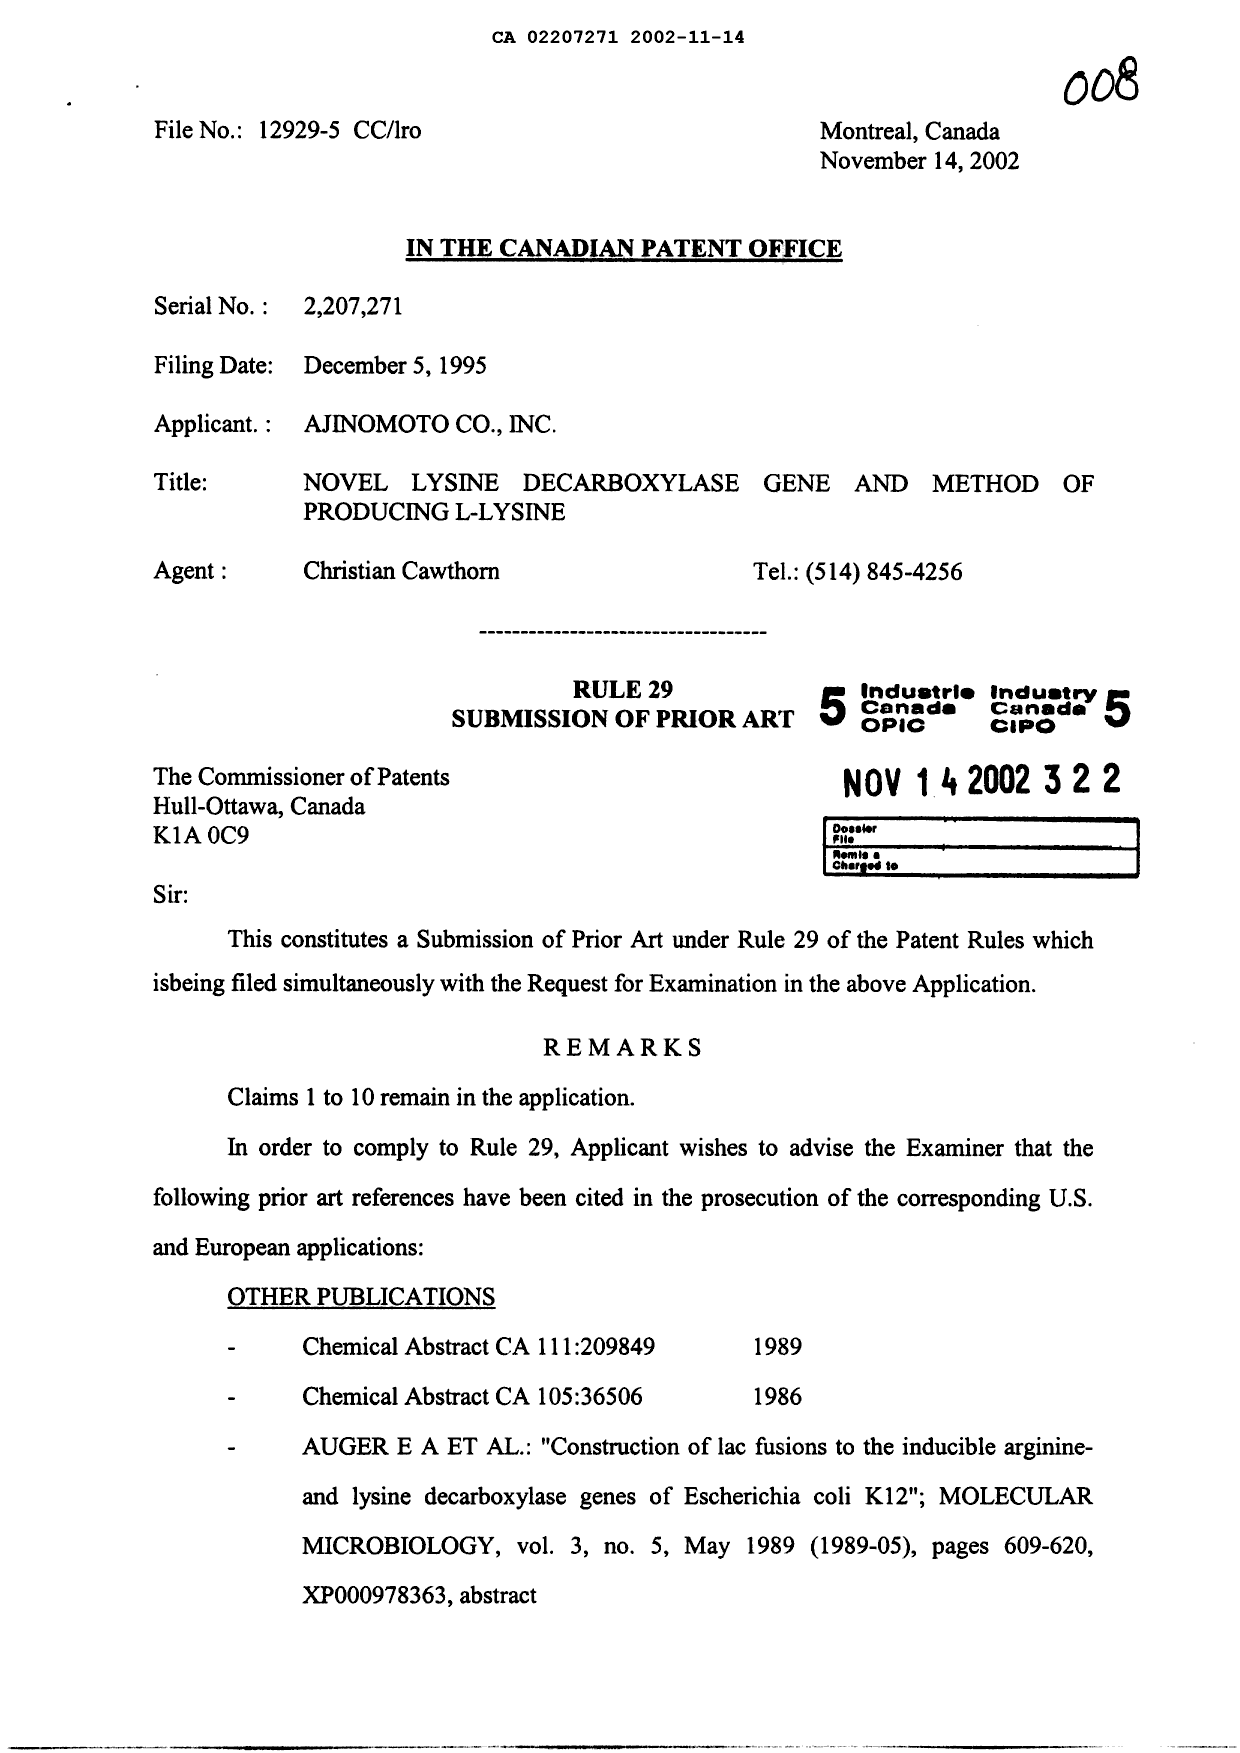 Document de brevet canadien 2207271. Poursuite-Amendment 20021114. Image 1 de 3